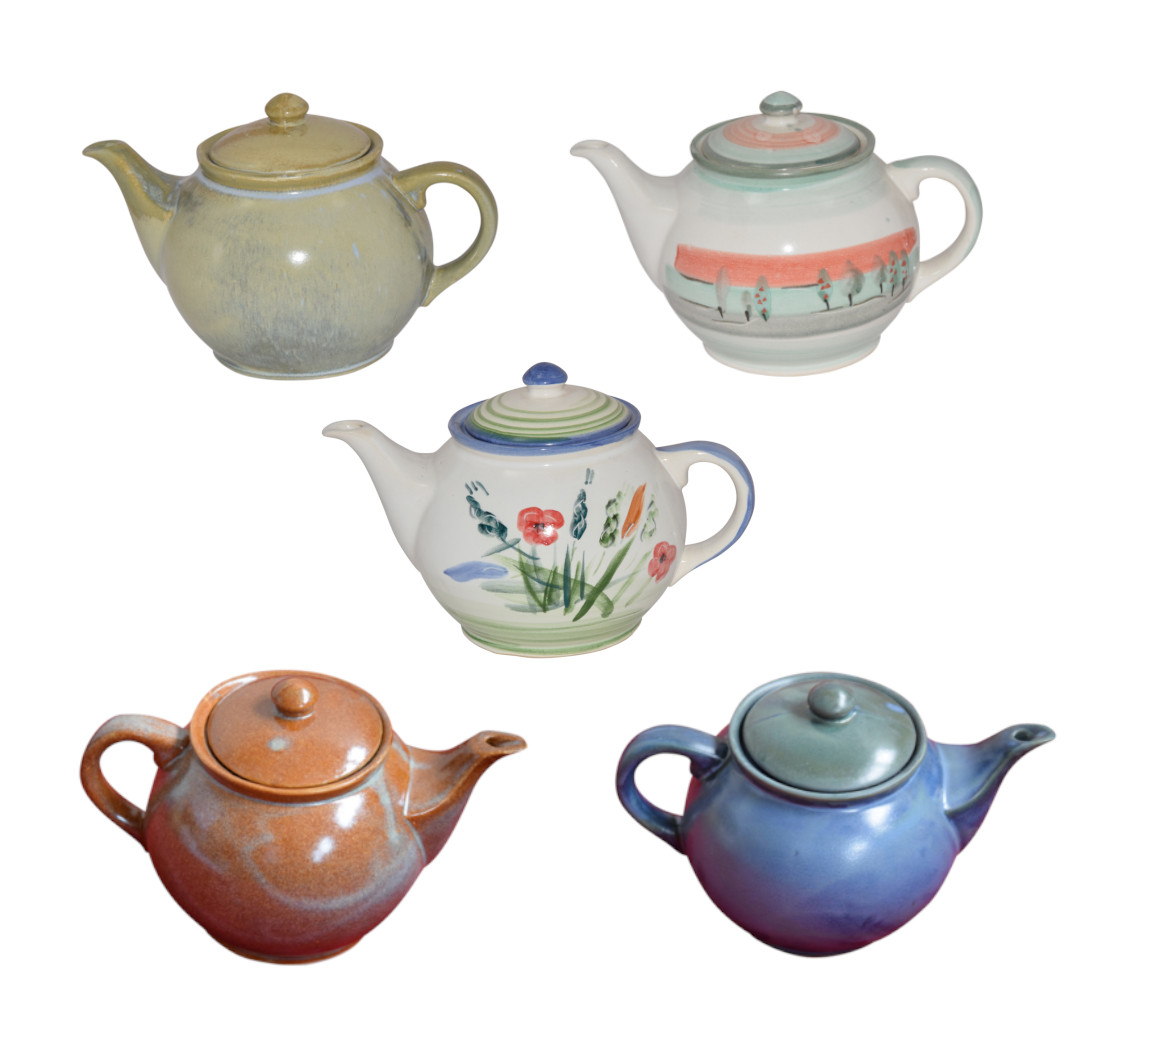 Teekannen aus Keramik in verschiedenen Farben und Motiven | Handarbeit